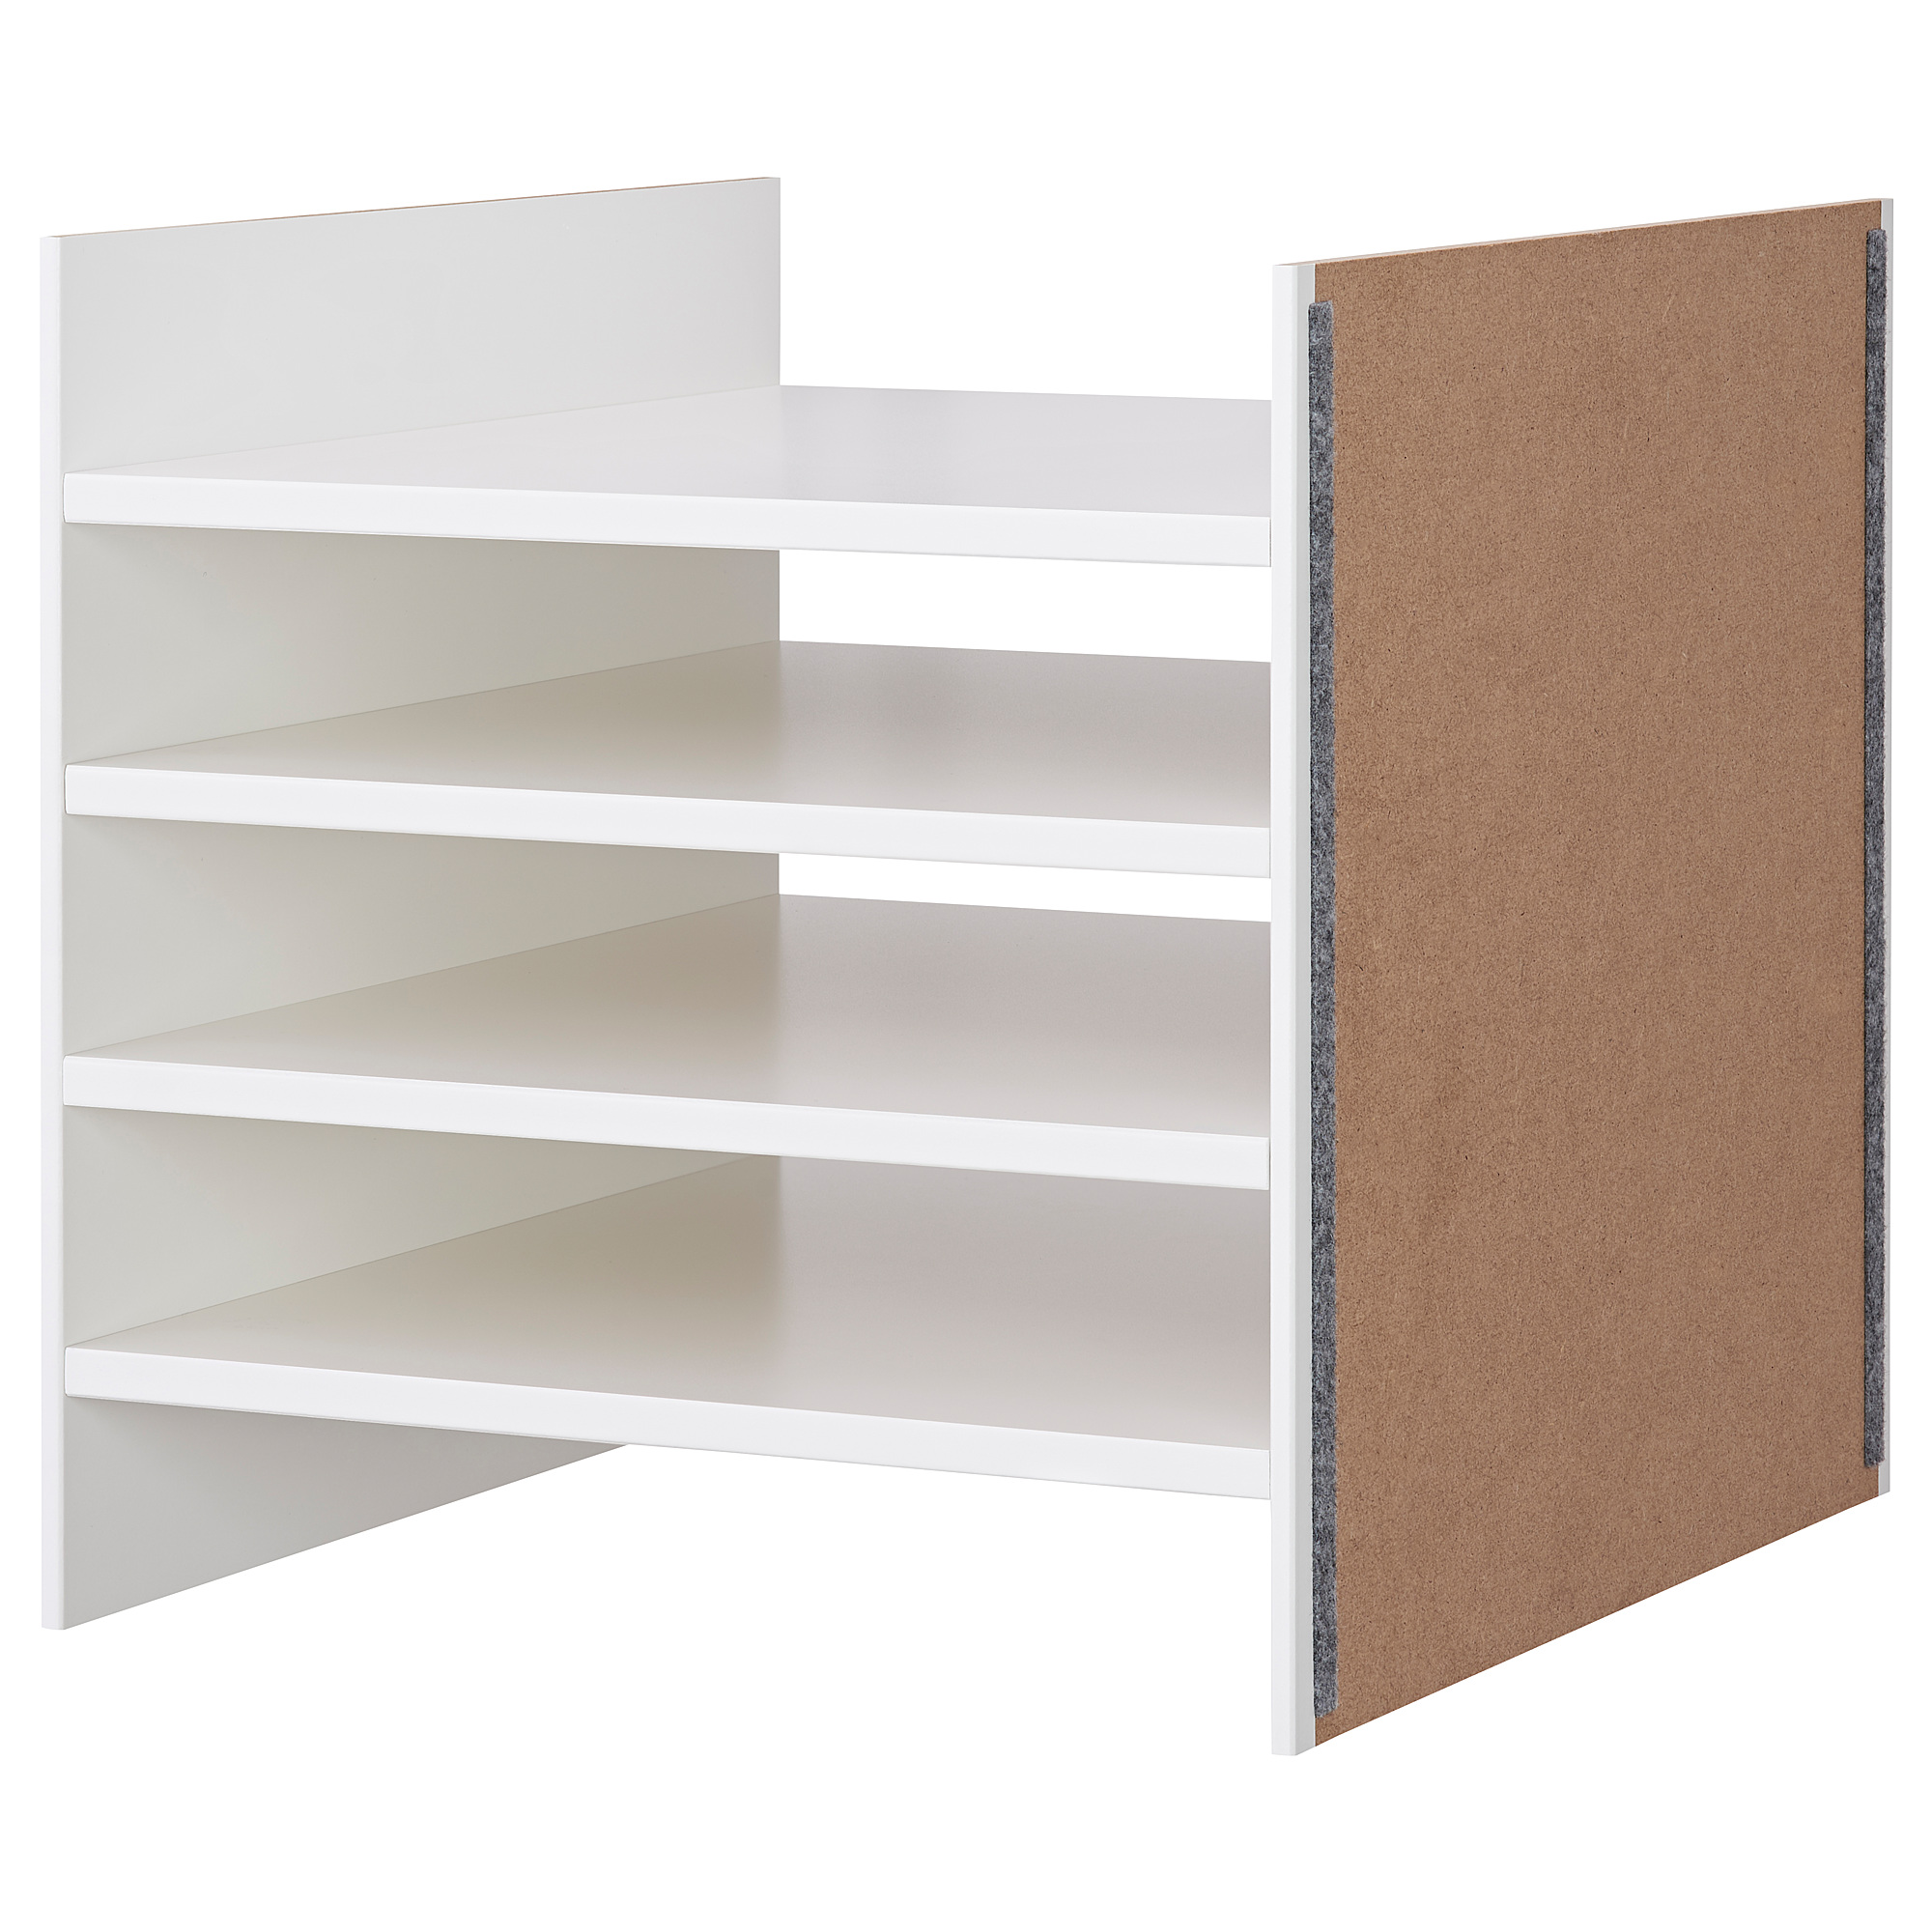 KALLAX insert with 4 shelves